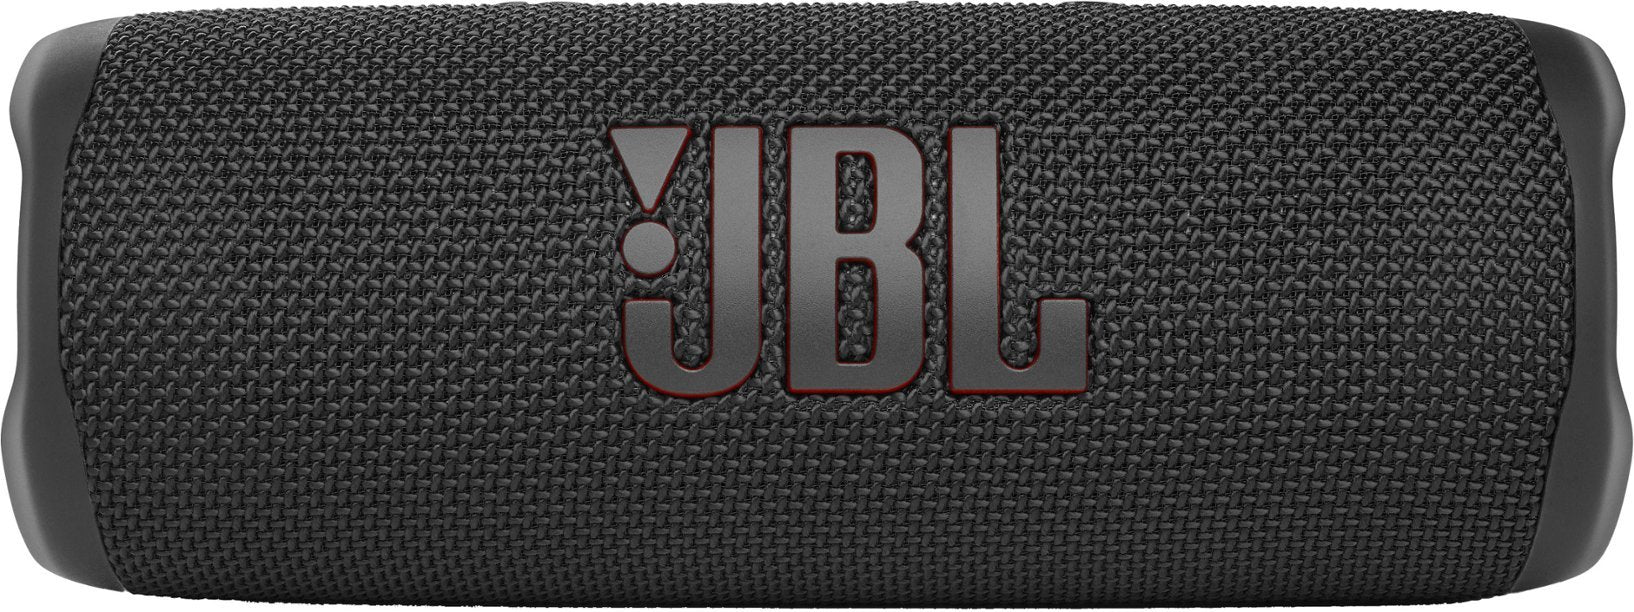 JBL FLIP 6 Portable Wireless Waterproof Bluetooth Speaker - Black (New)